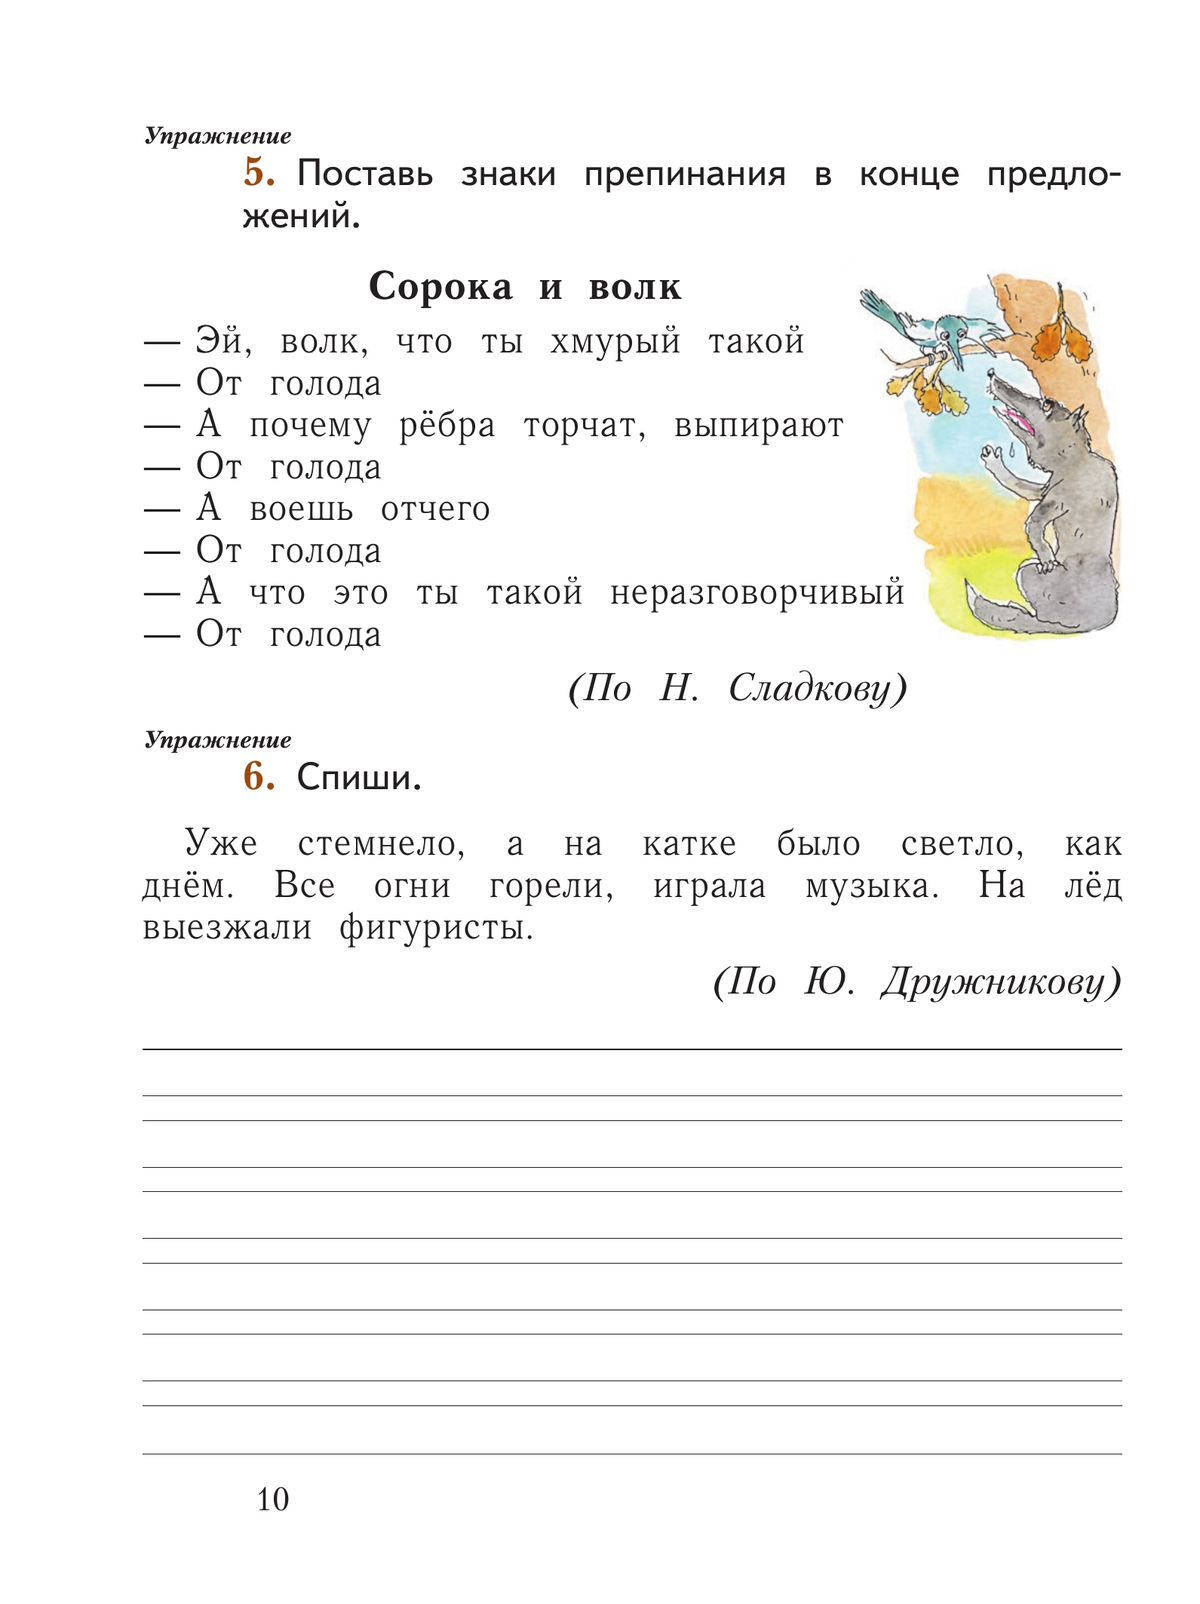 Русский язык. 1 класс. Рабочая тетрадь. В 2 частях. Часть 1 5